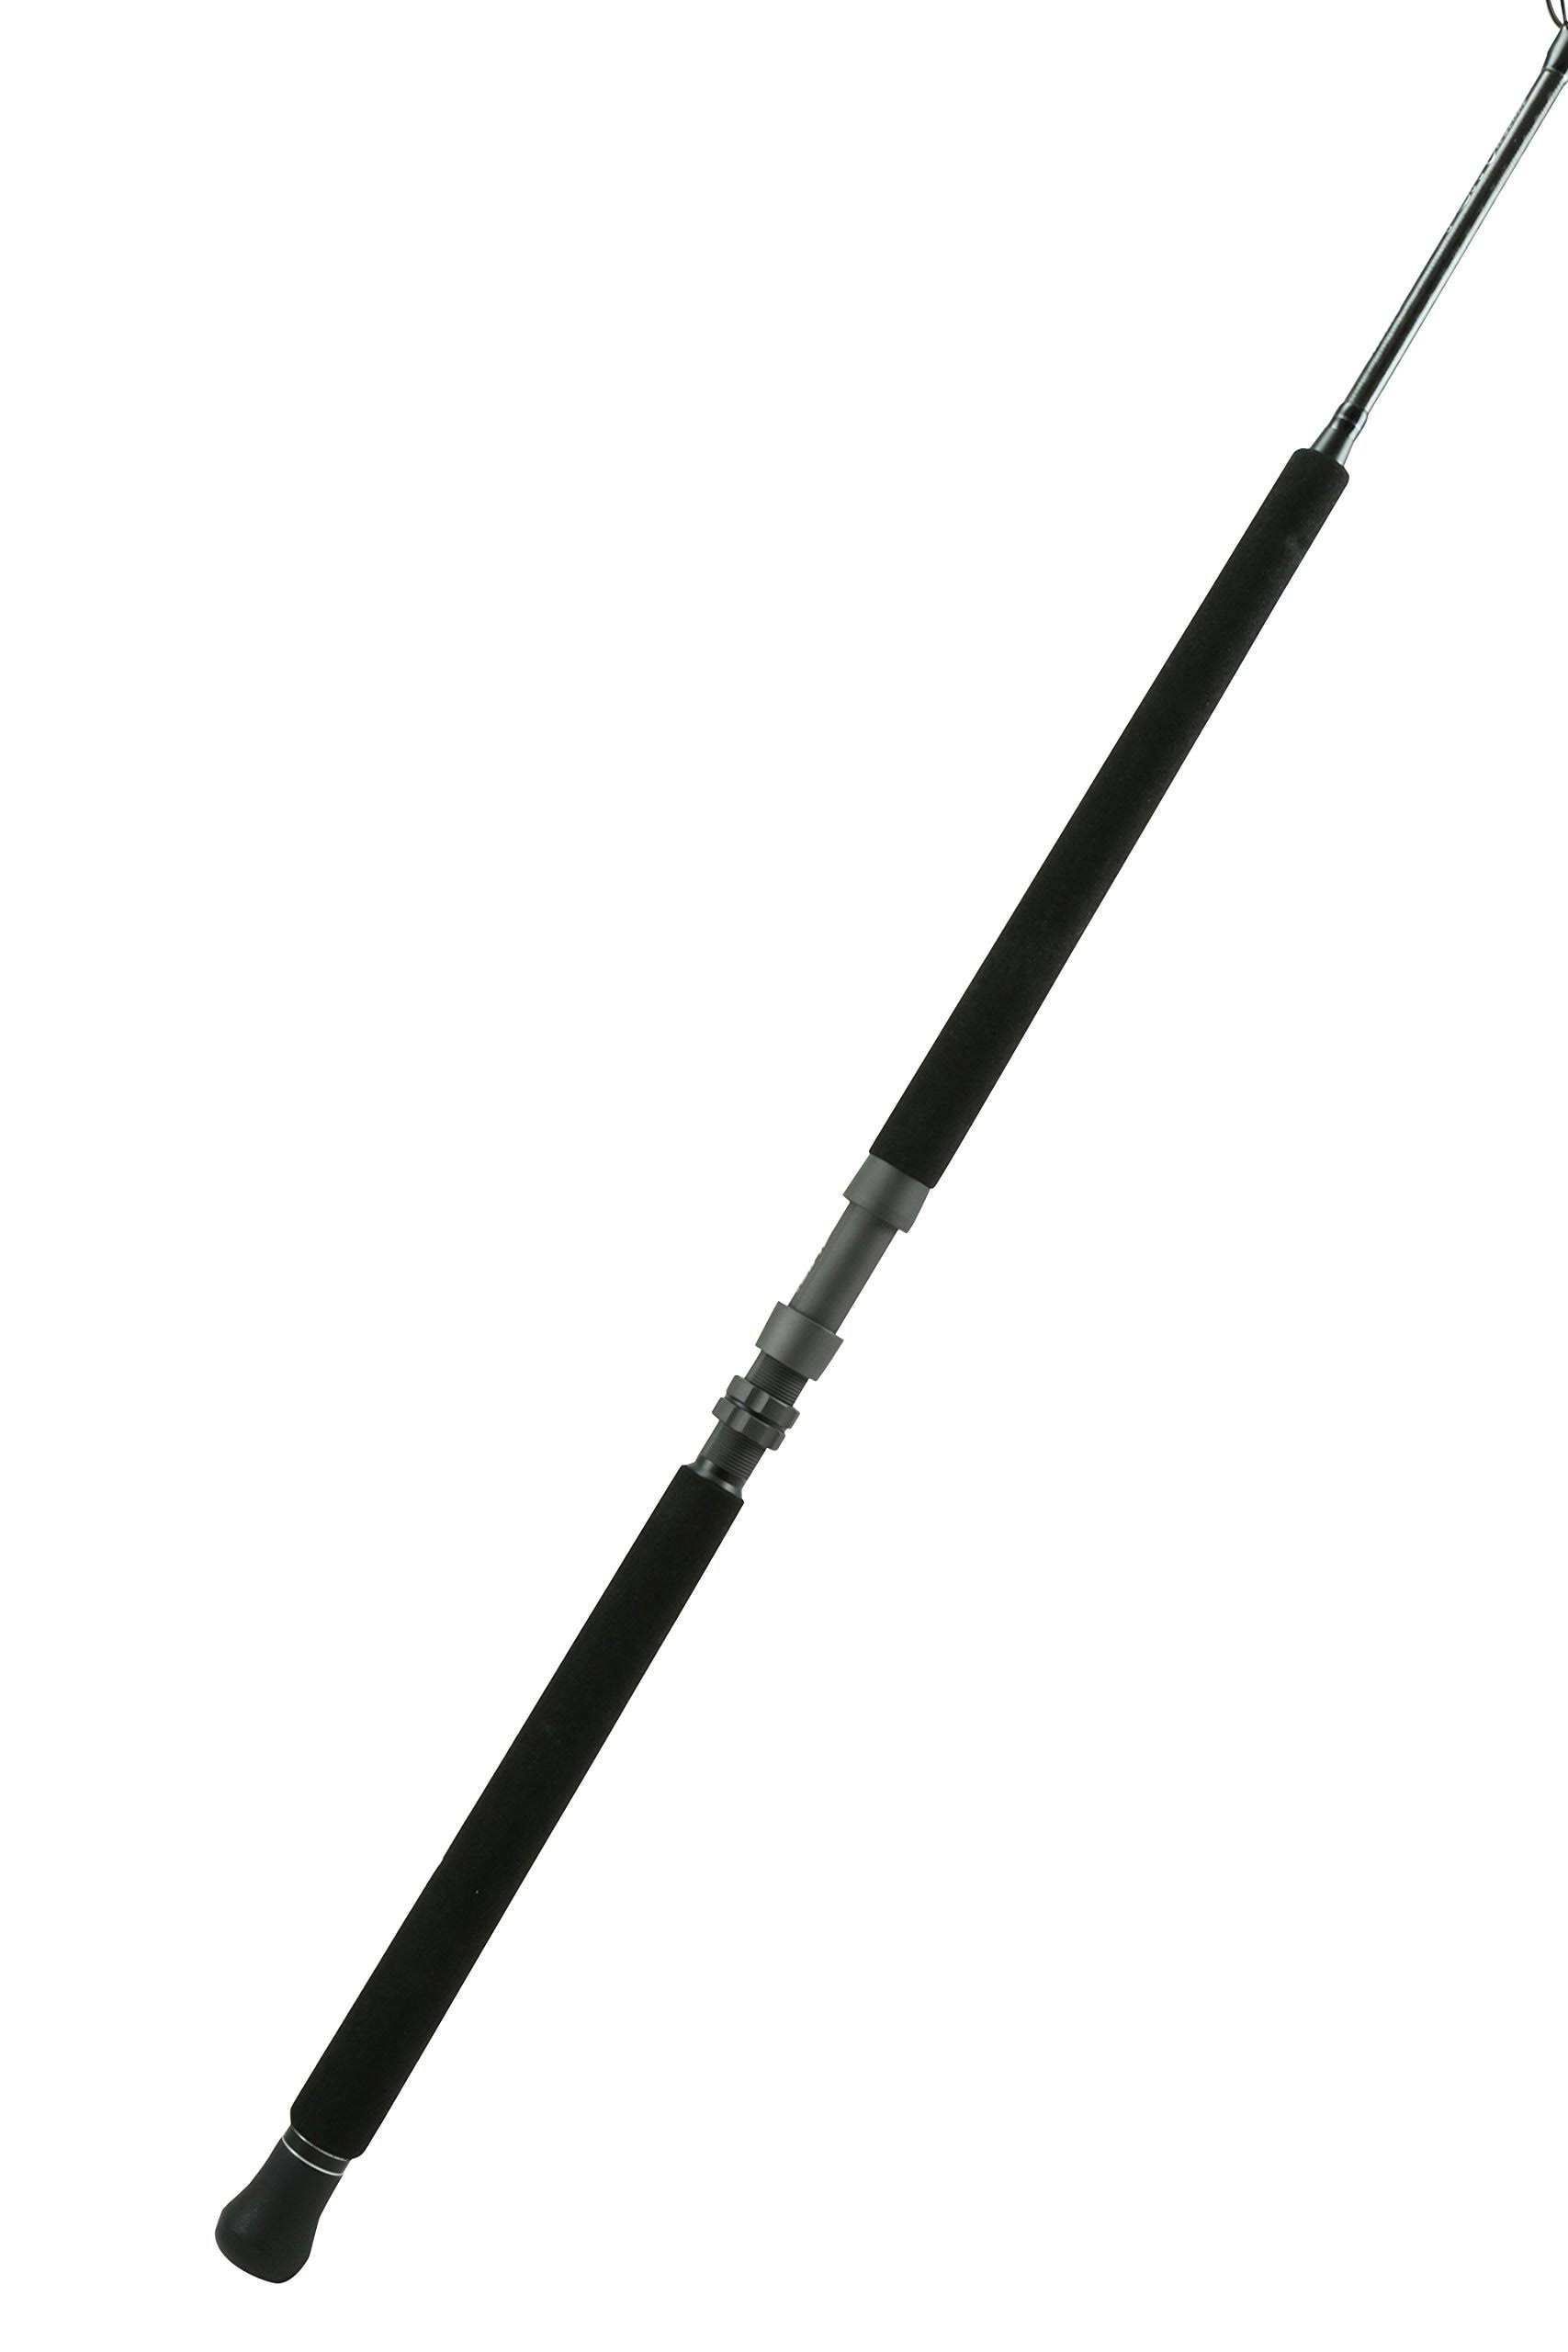 Okuma PCH Custom Casting Rod - 7'